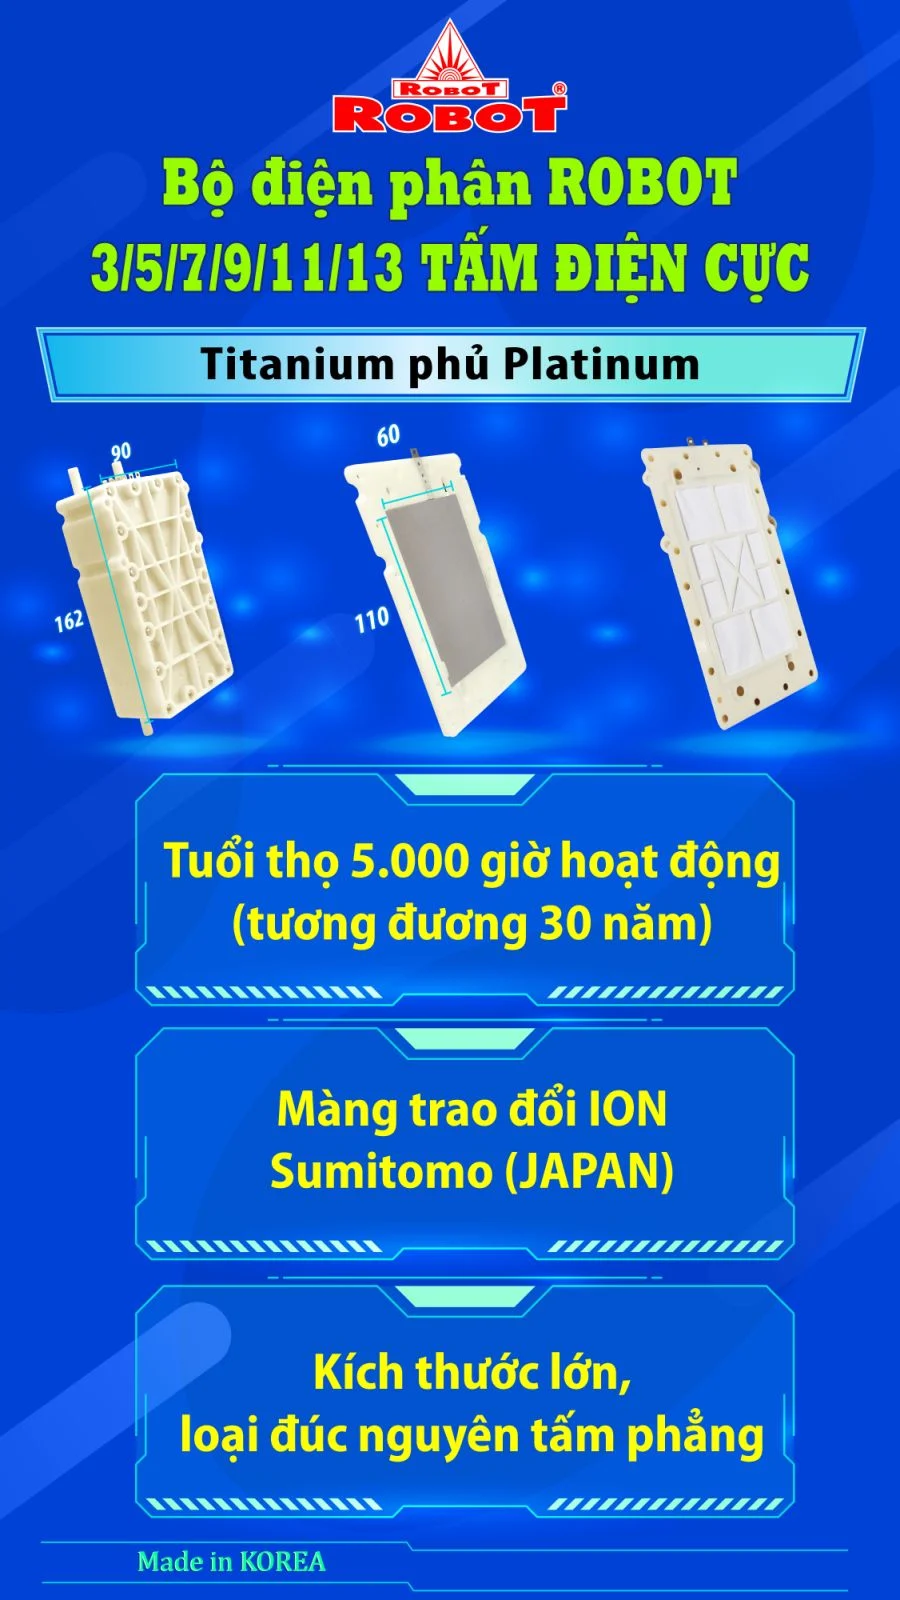 Bộ điện phân đến 3 tấm điện cực Titanium phủ Platinum của IONQUEEN 711